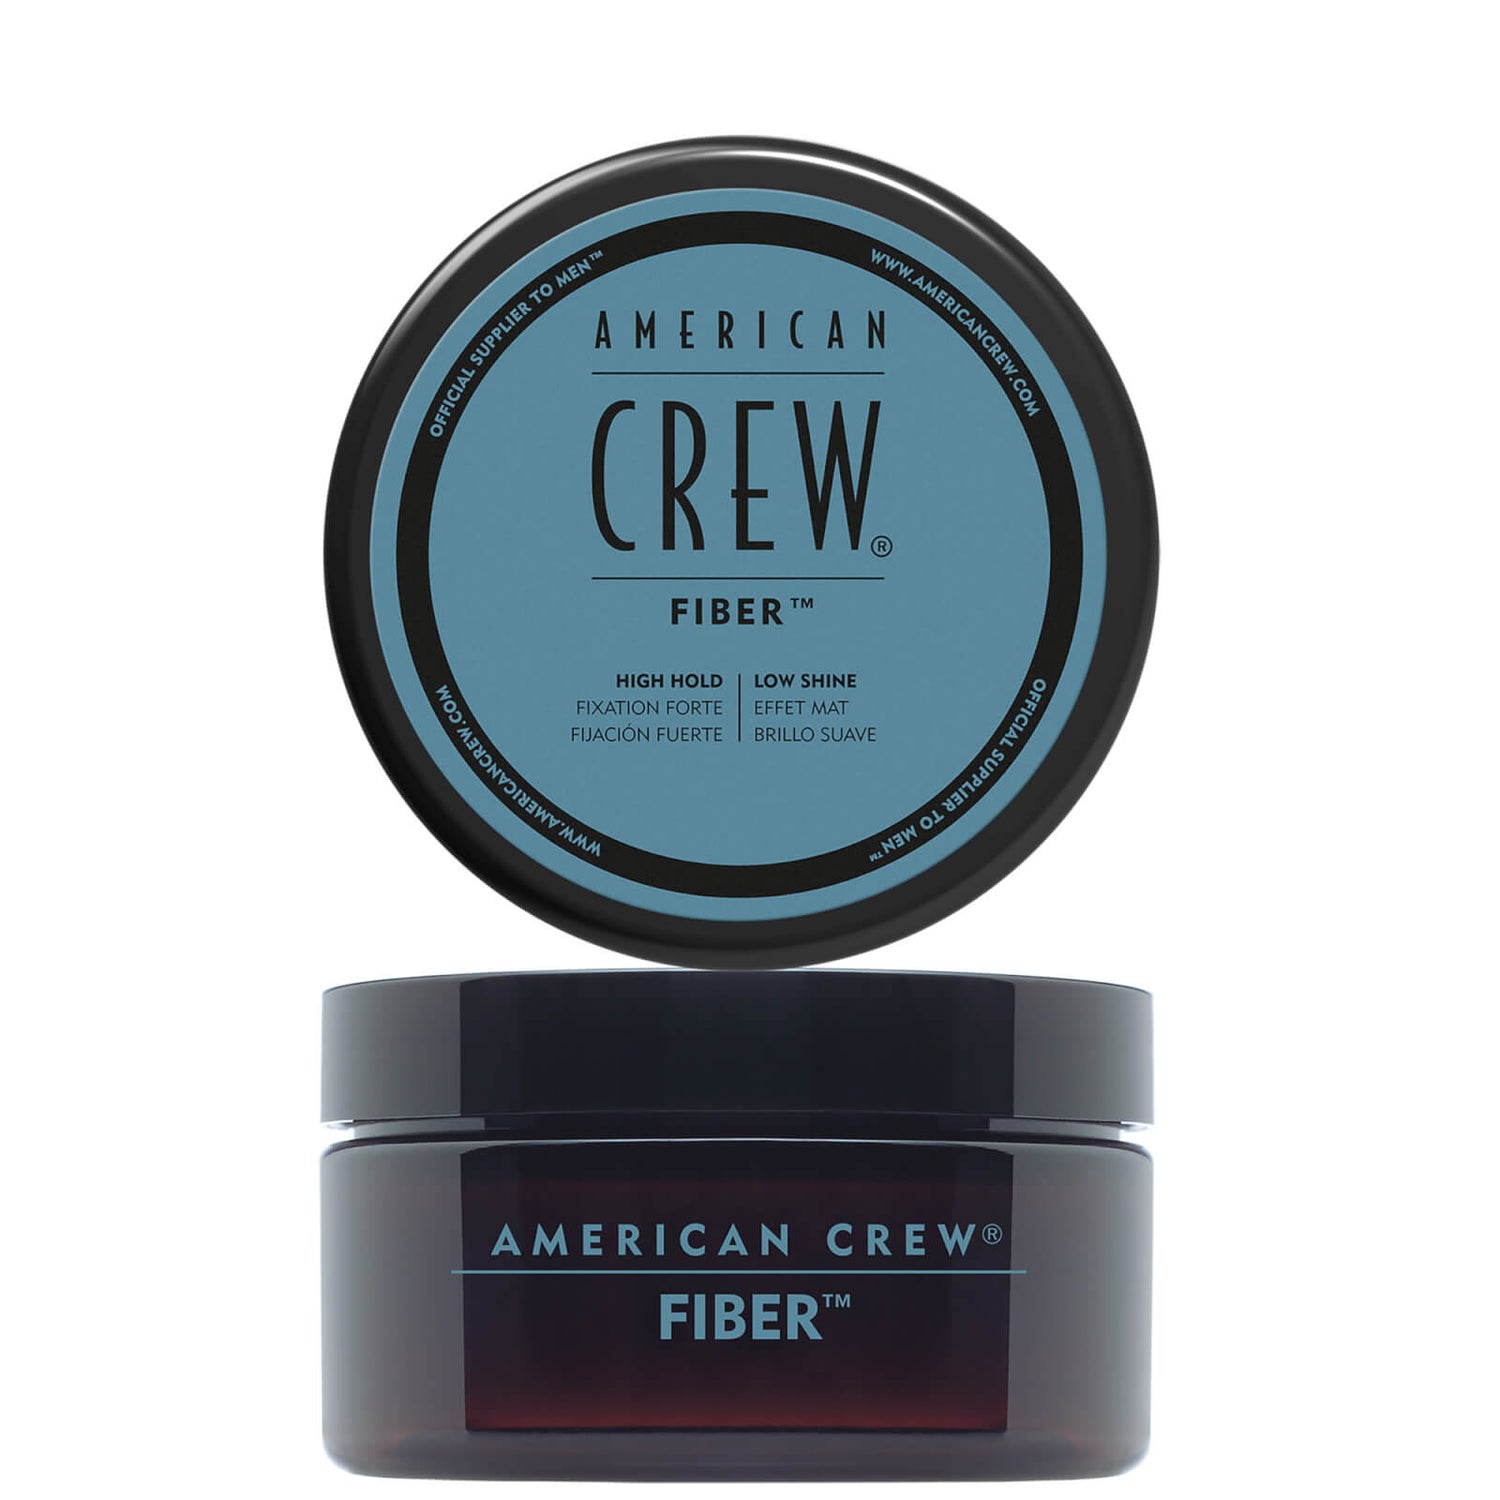 American Crew 美国队员 Fiber 发蜡 85g